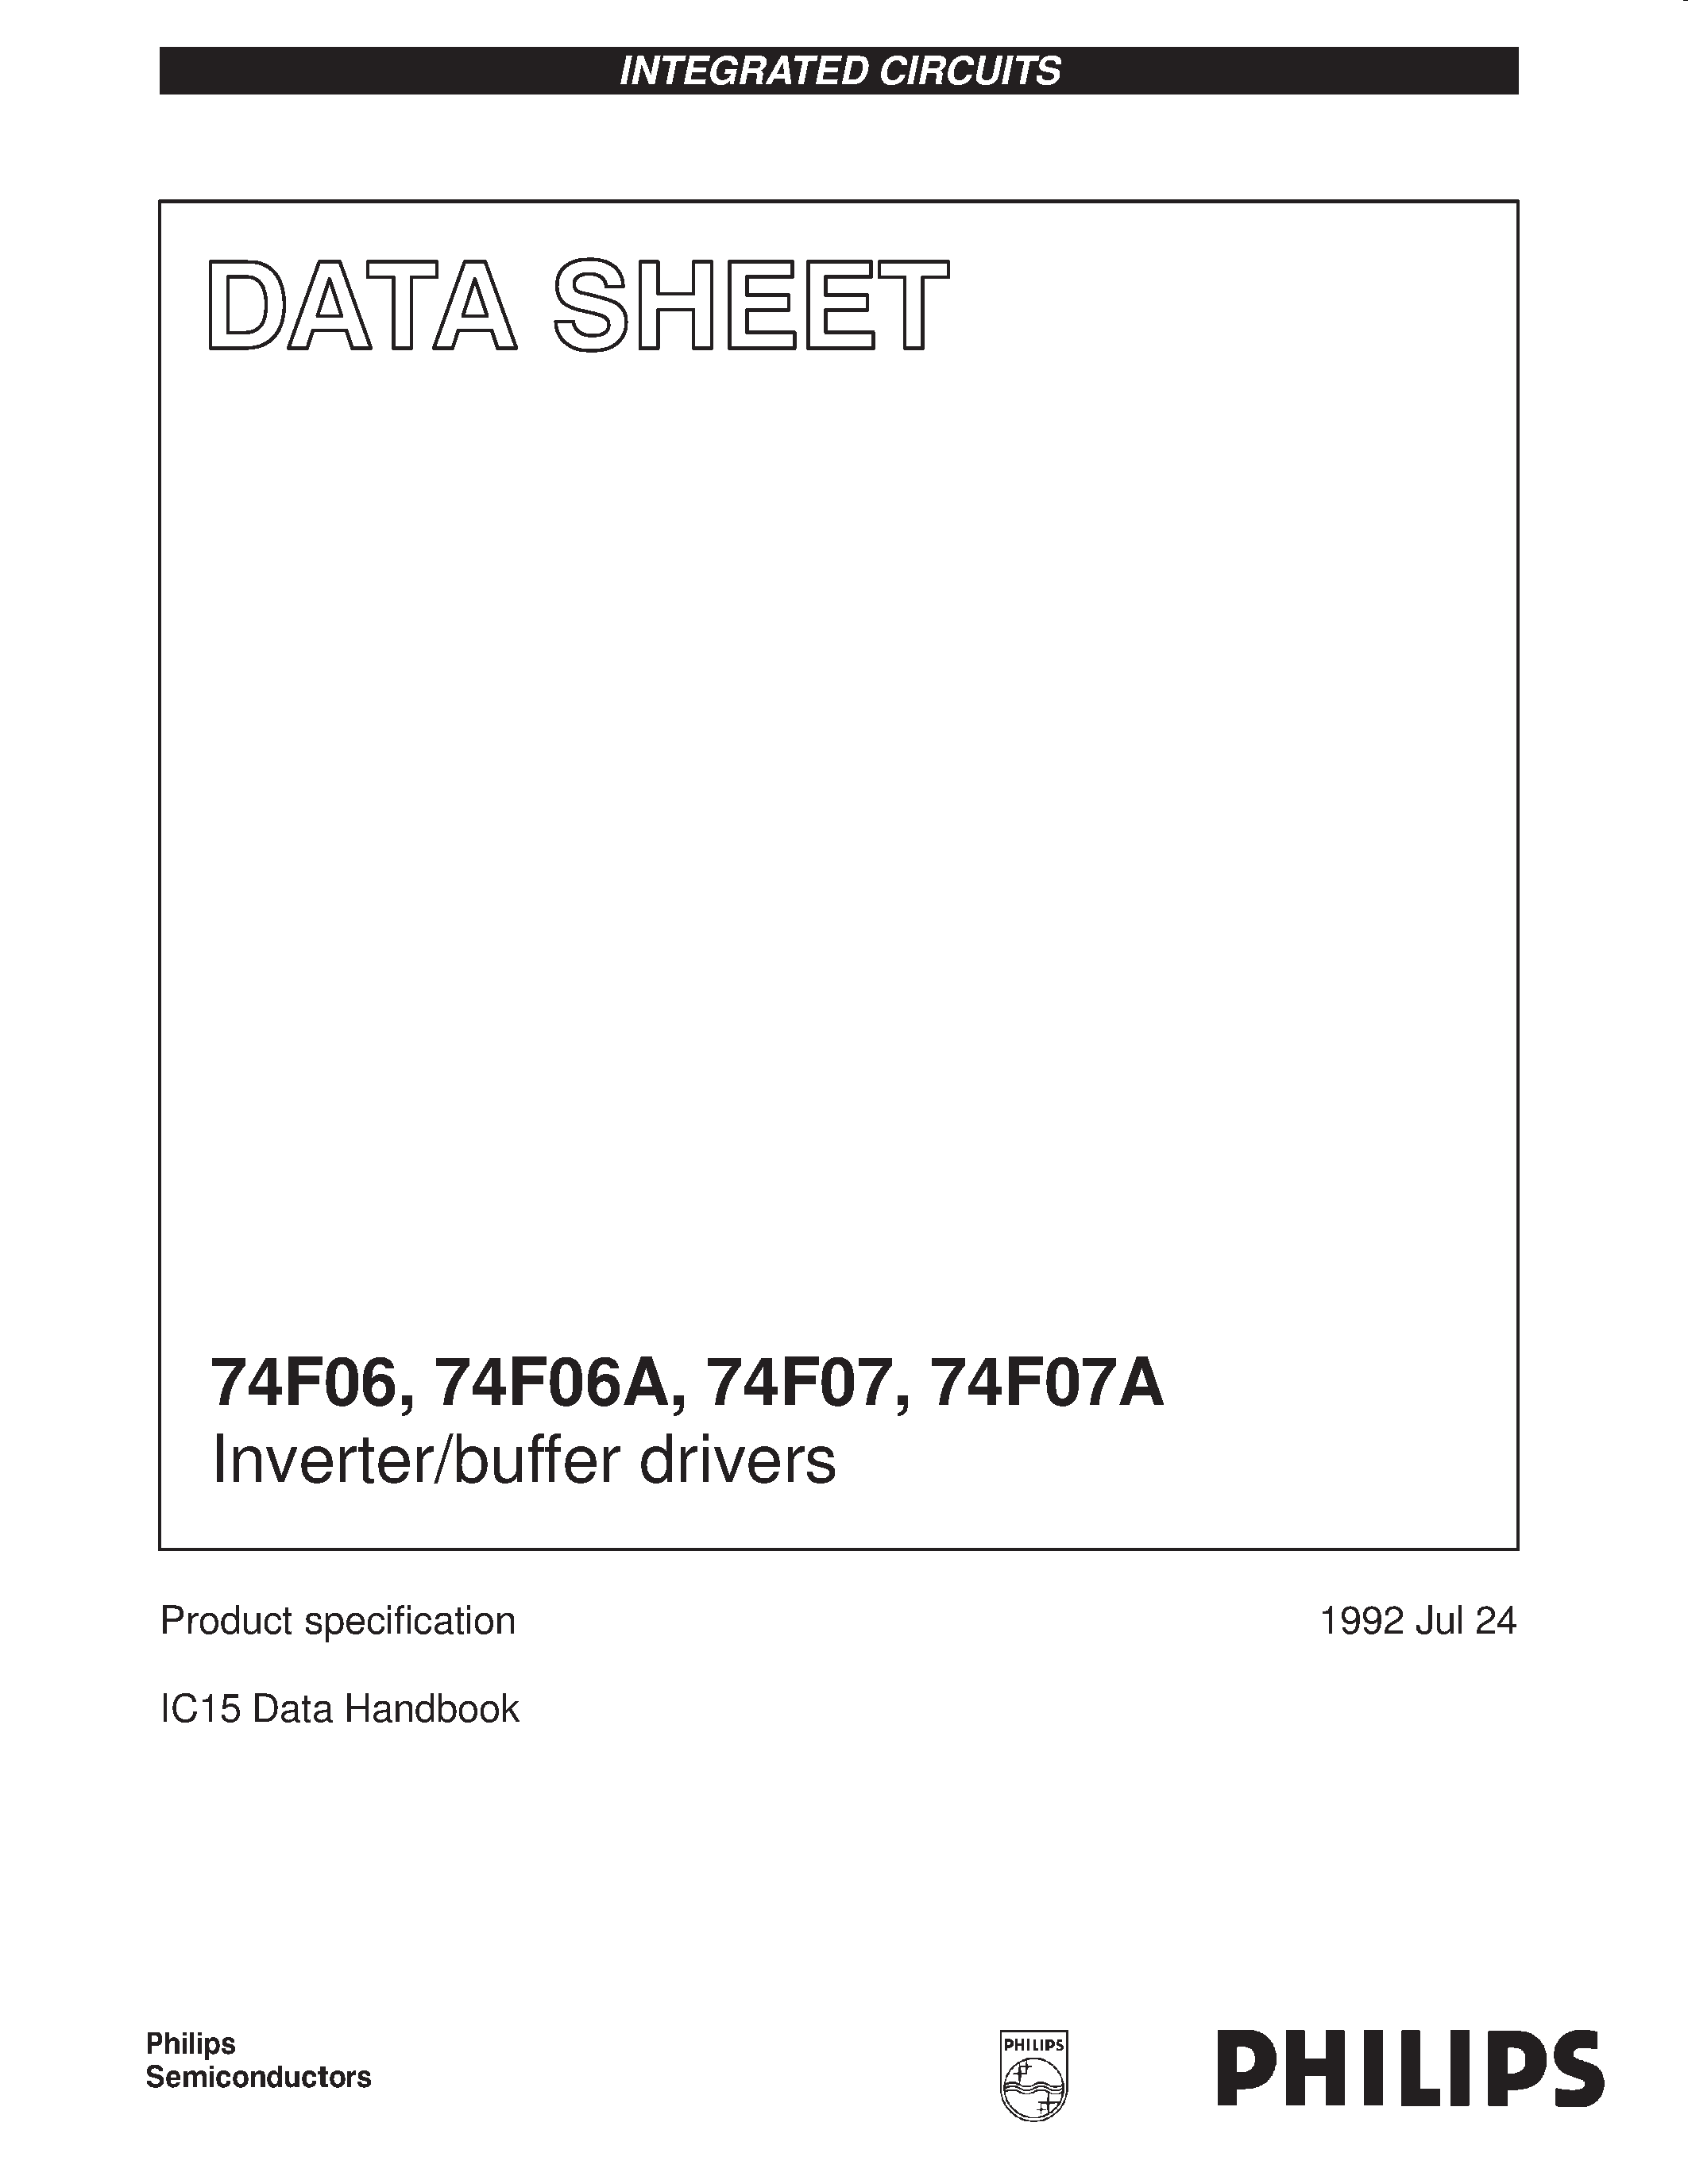 Даташит 74F06 - Inverter/buffer drivers страница 1